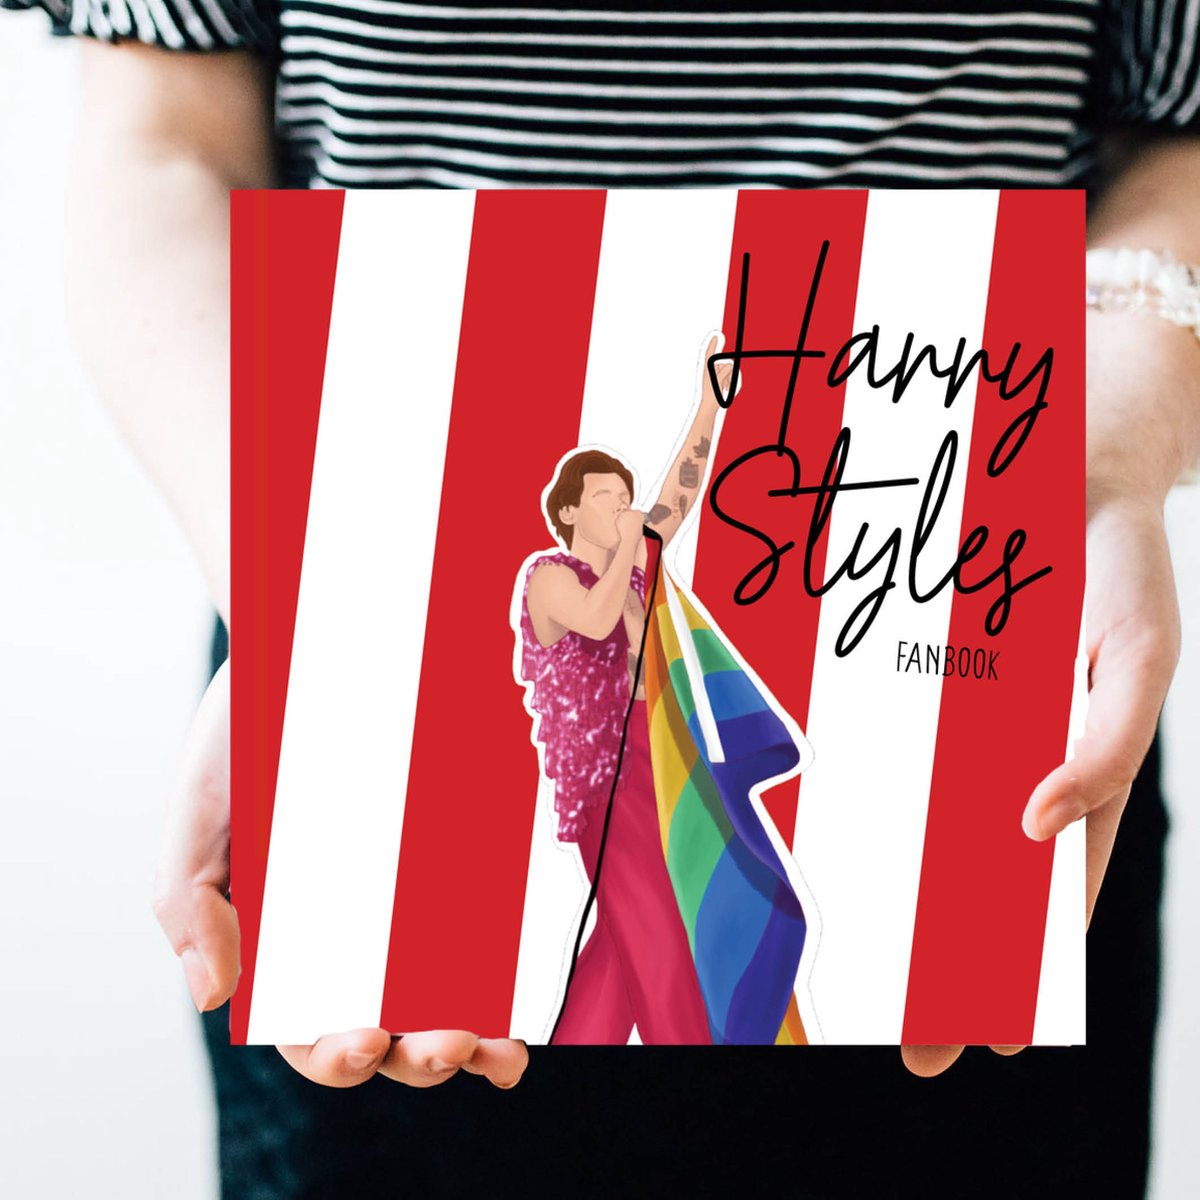 Harry Styles invulboek vol leuke & lieve vragen voor de echte Harry fans! (Harry Styles boek, cadeau , fanbook, memories)